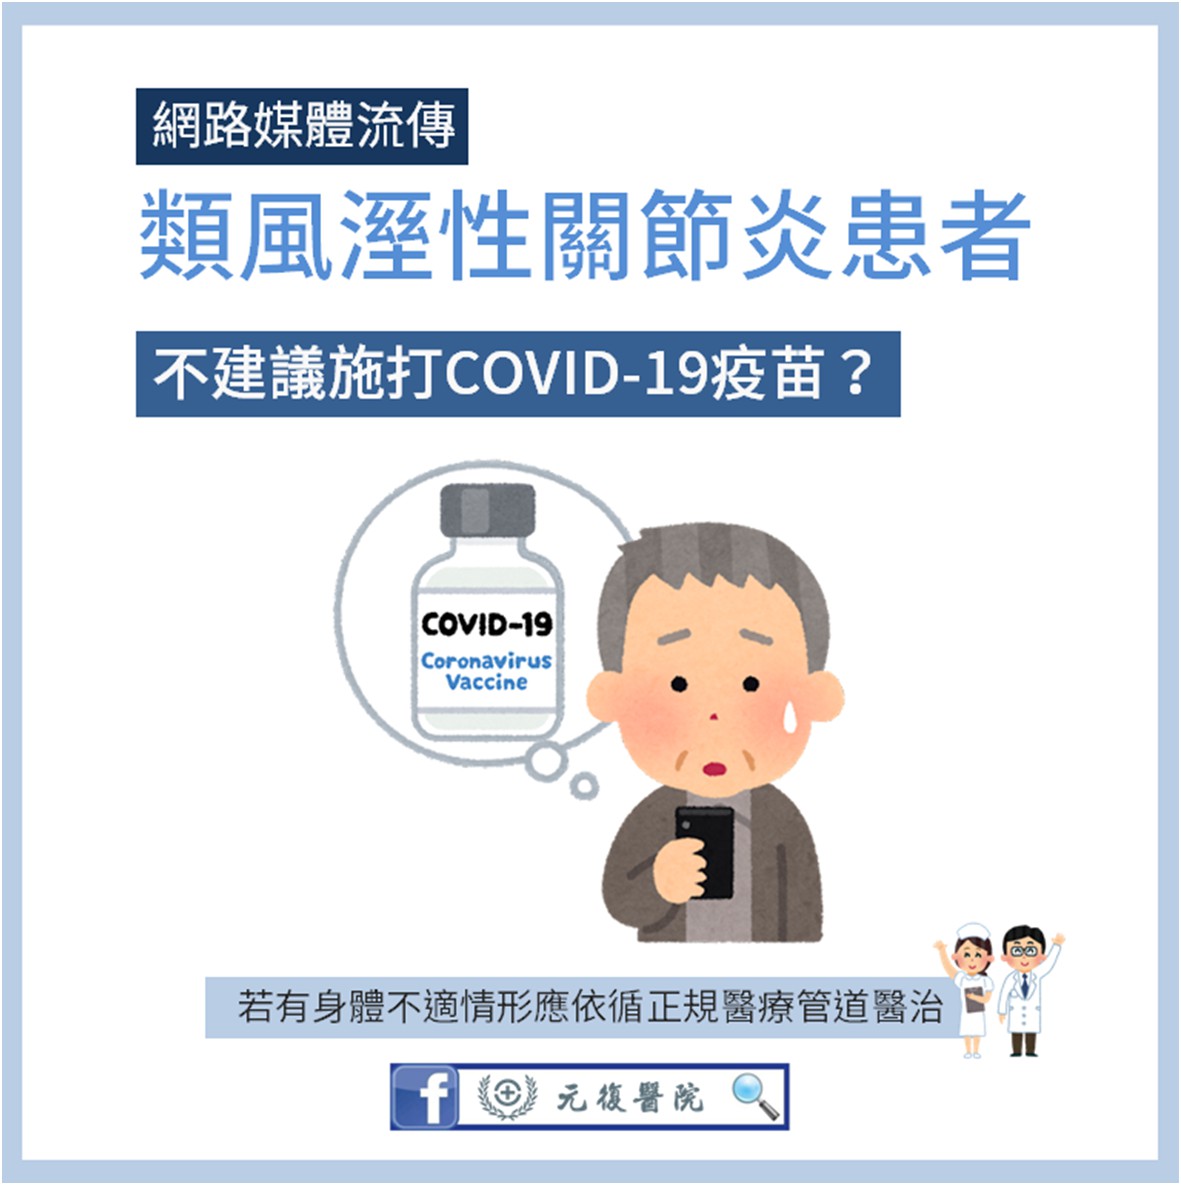 元復衛教小教室 / 類風溼性關節炎患者不建議施打COVID-19疫苗嗎？